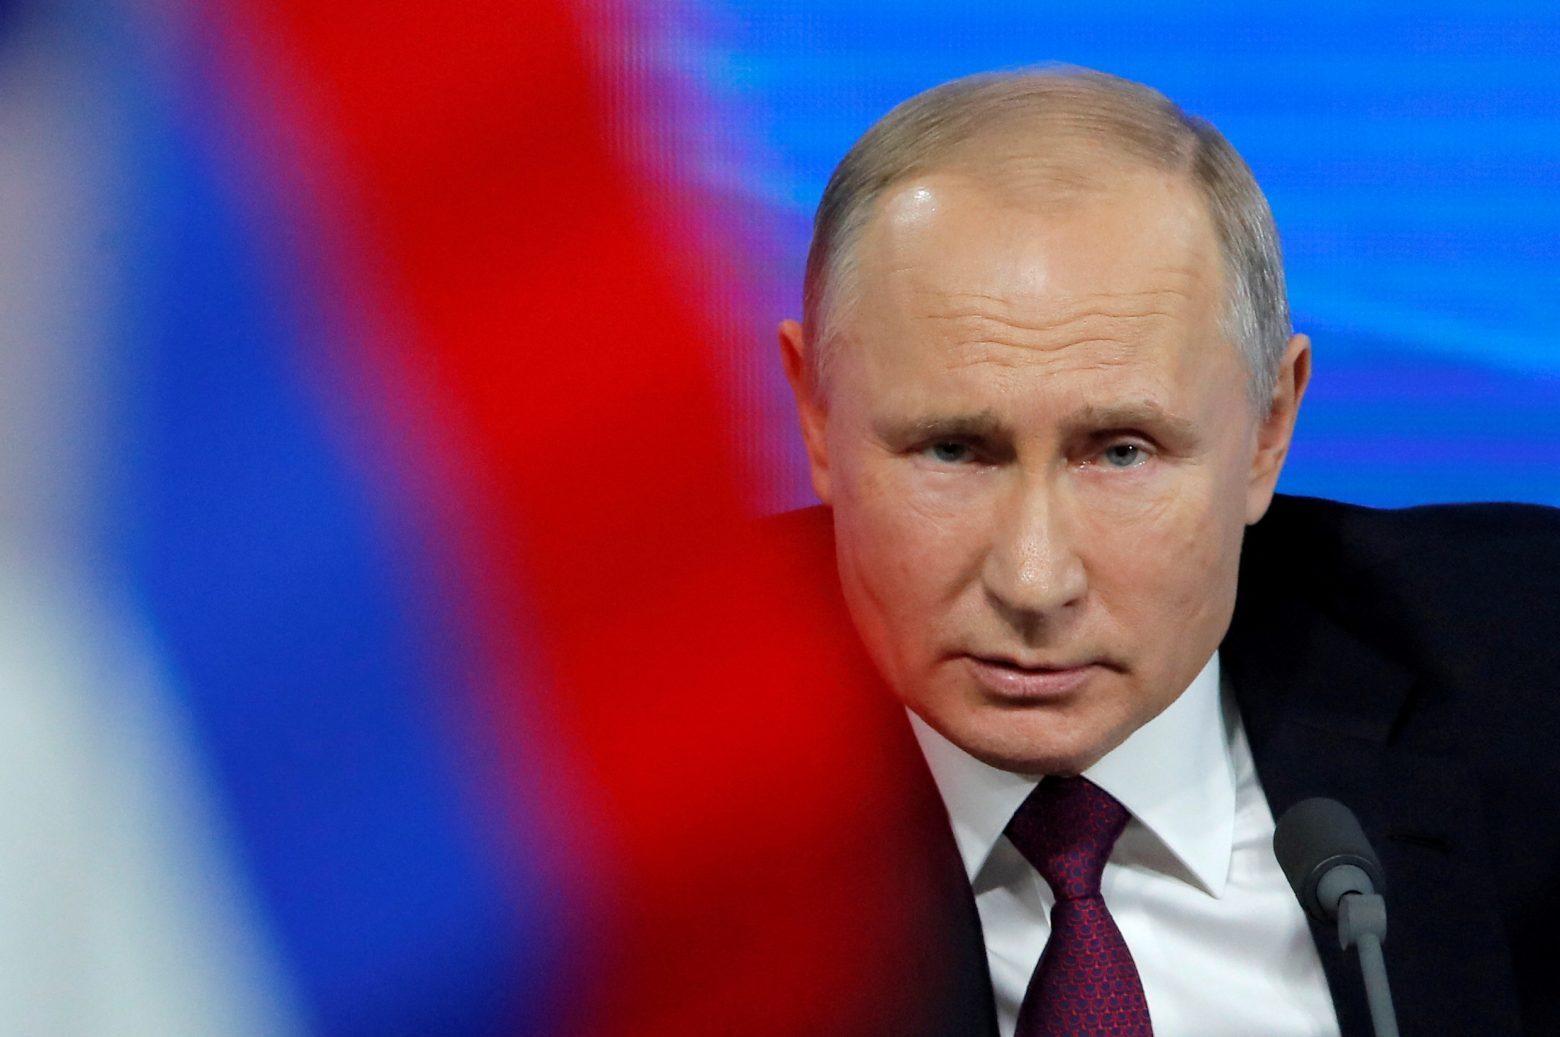 Βloomberg: Κάποτε το ΝΑΤΟ φοβόταν νίκη του Πούτιν στην Ουκρανία - Τώρα... τρέμει για την ήττα του